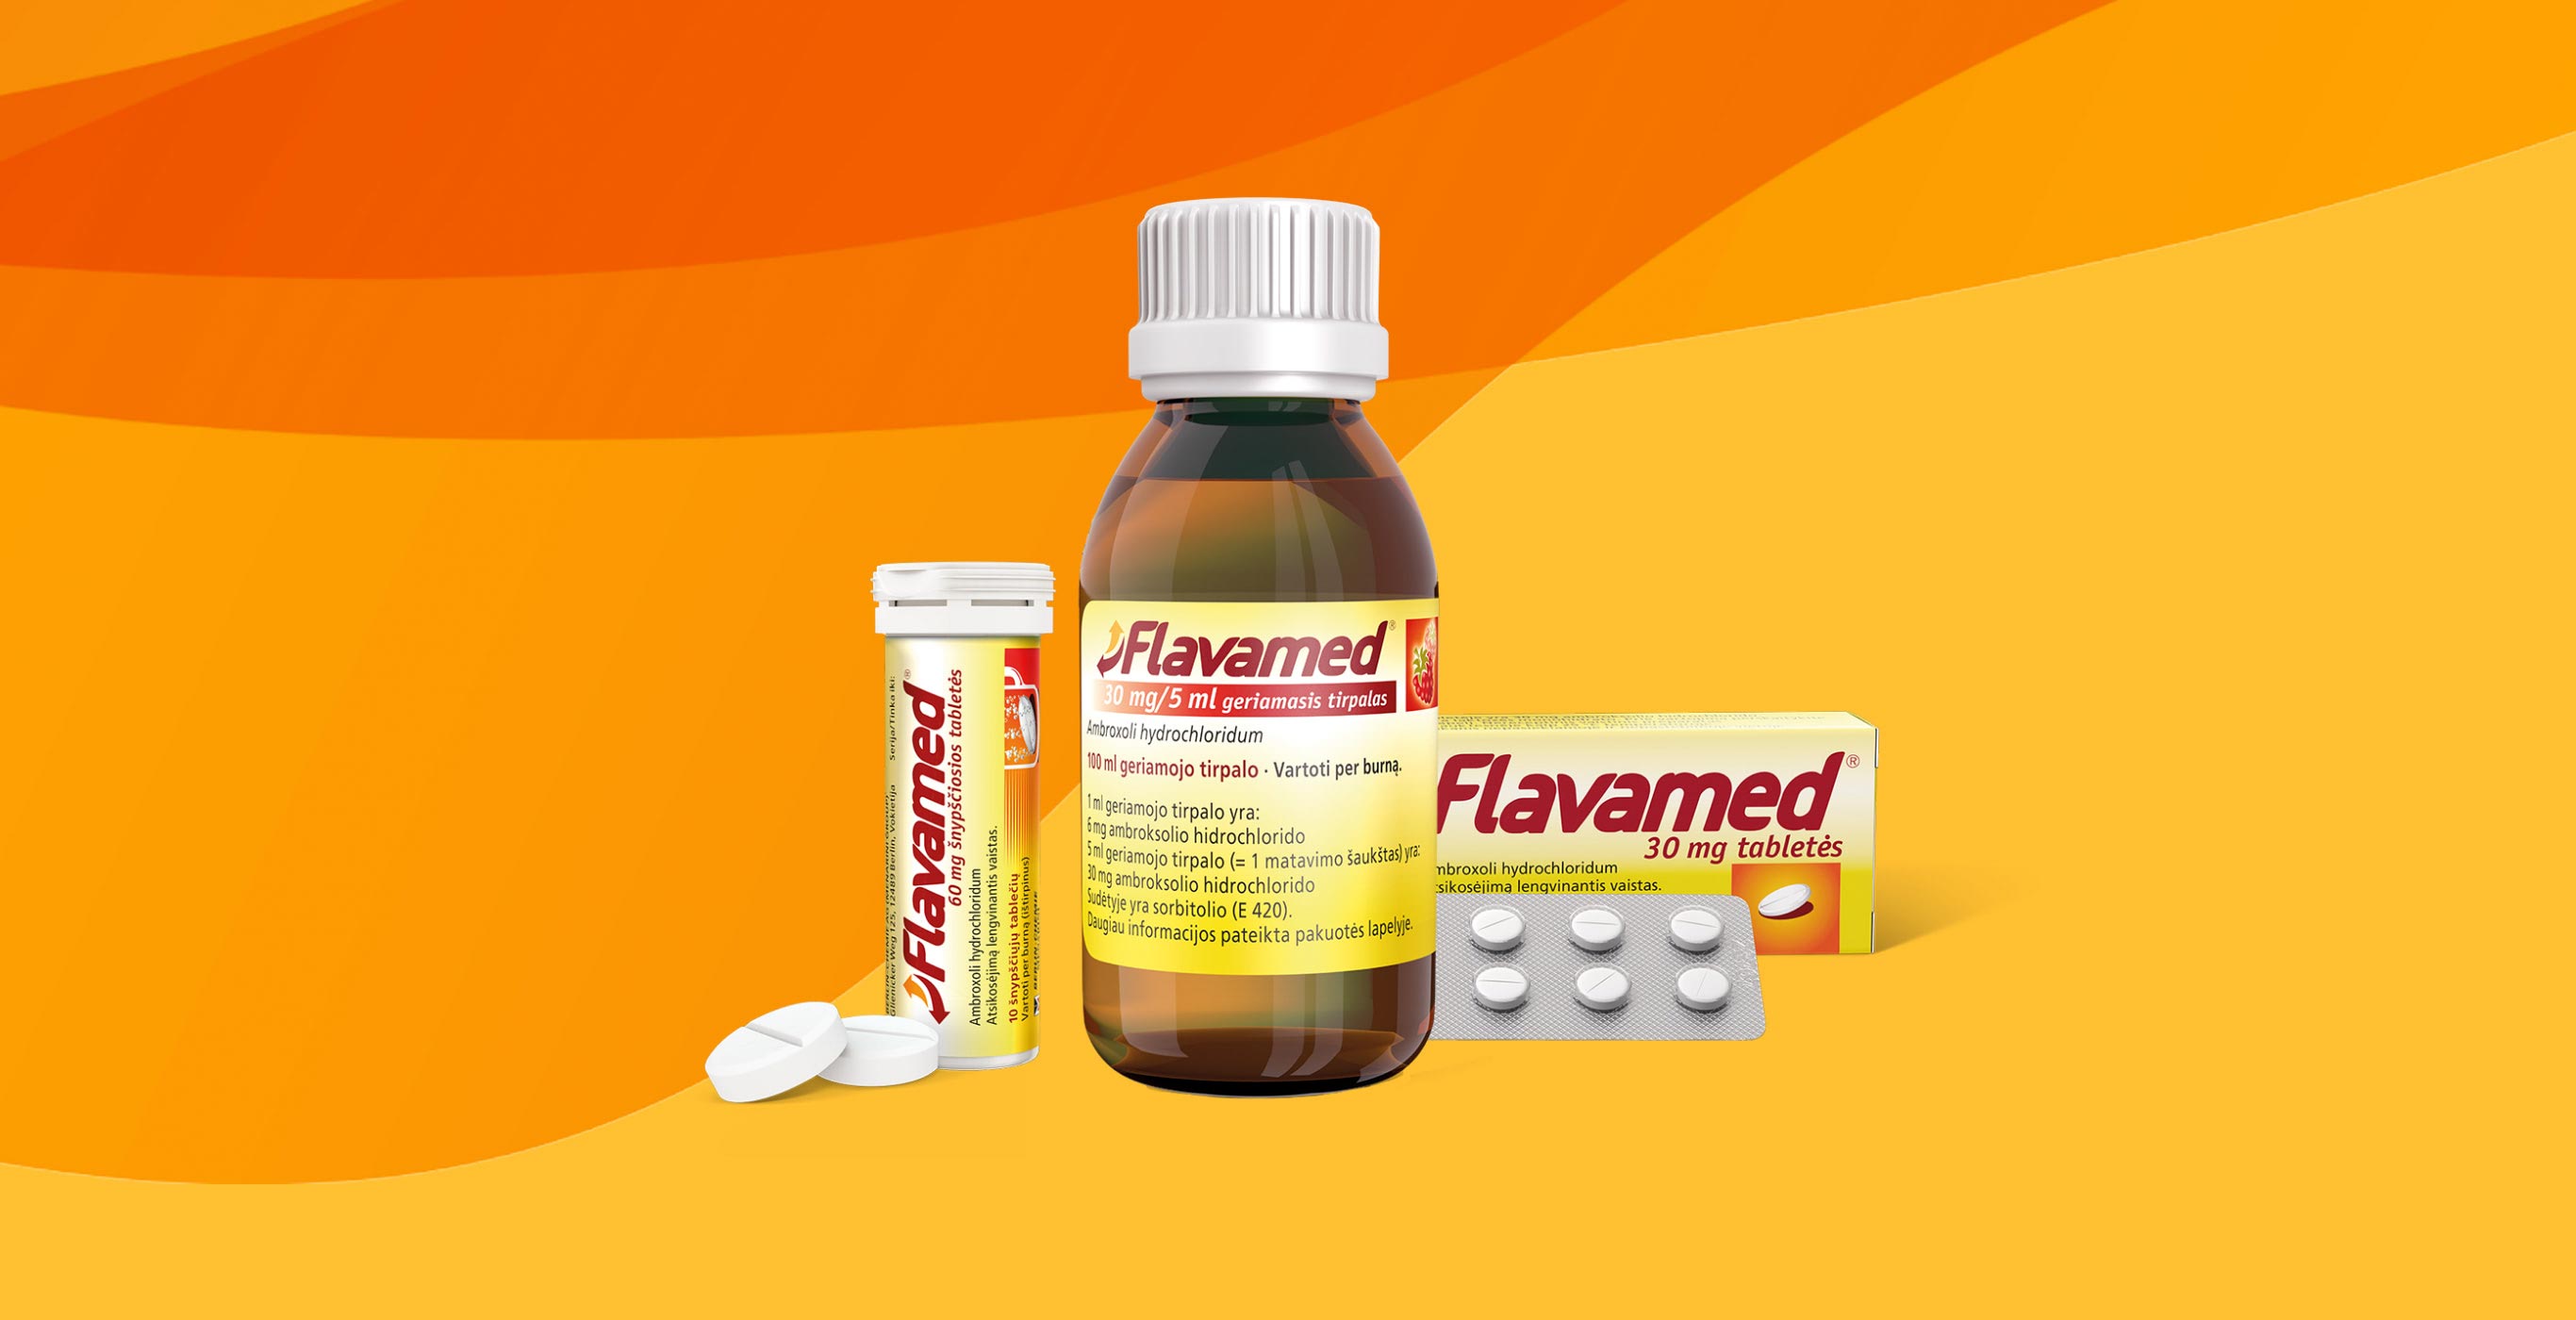 Packshot der OTC-Marke Flavamed® für den von der Healthcare Werbeagentur mcs umgesetzten Brand-Refresh